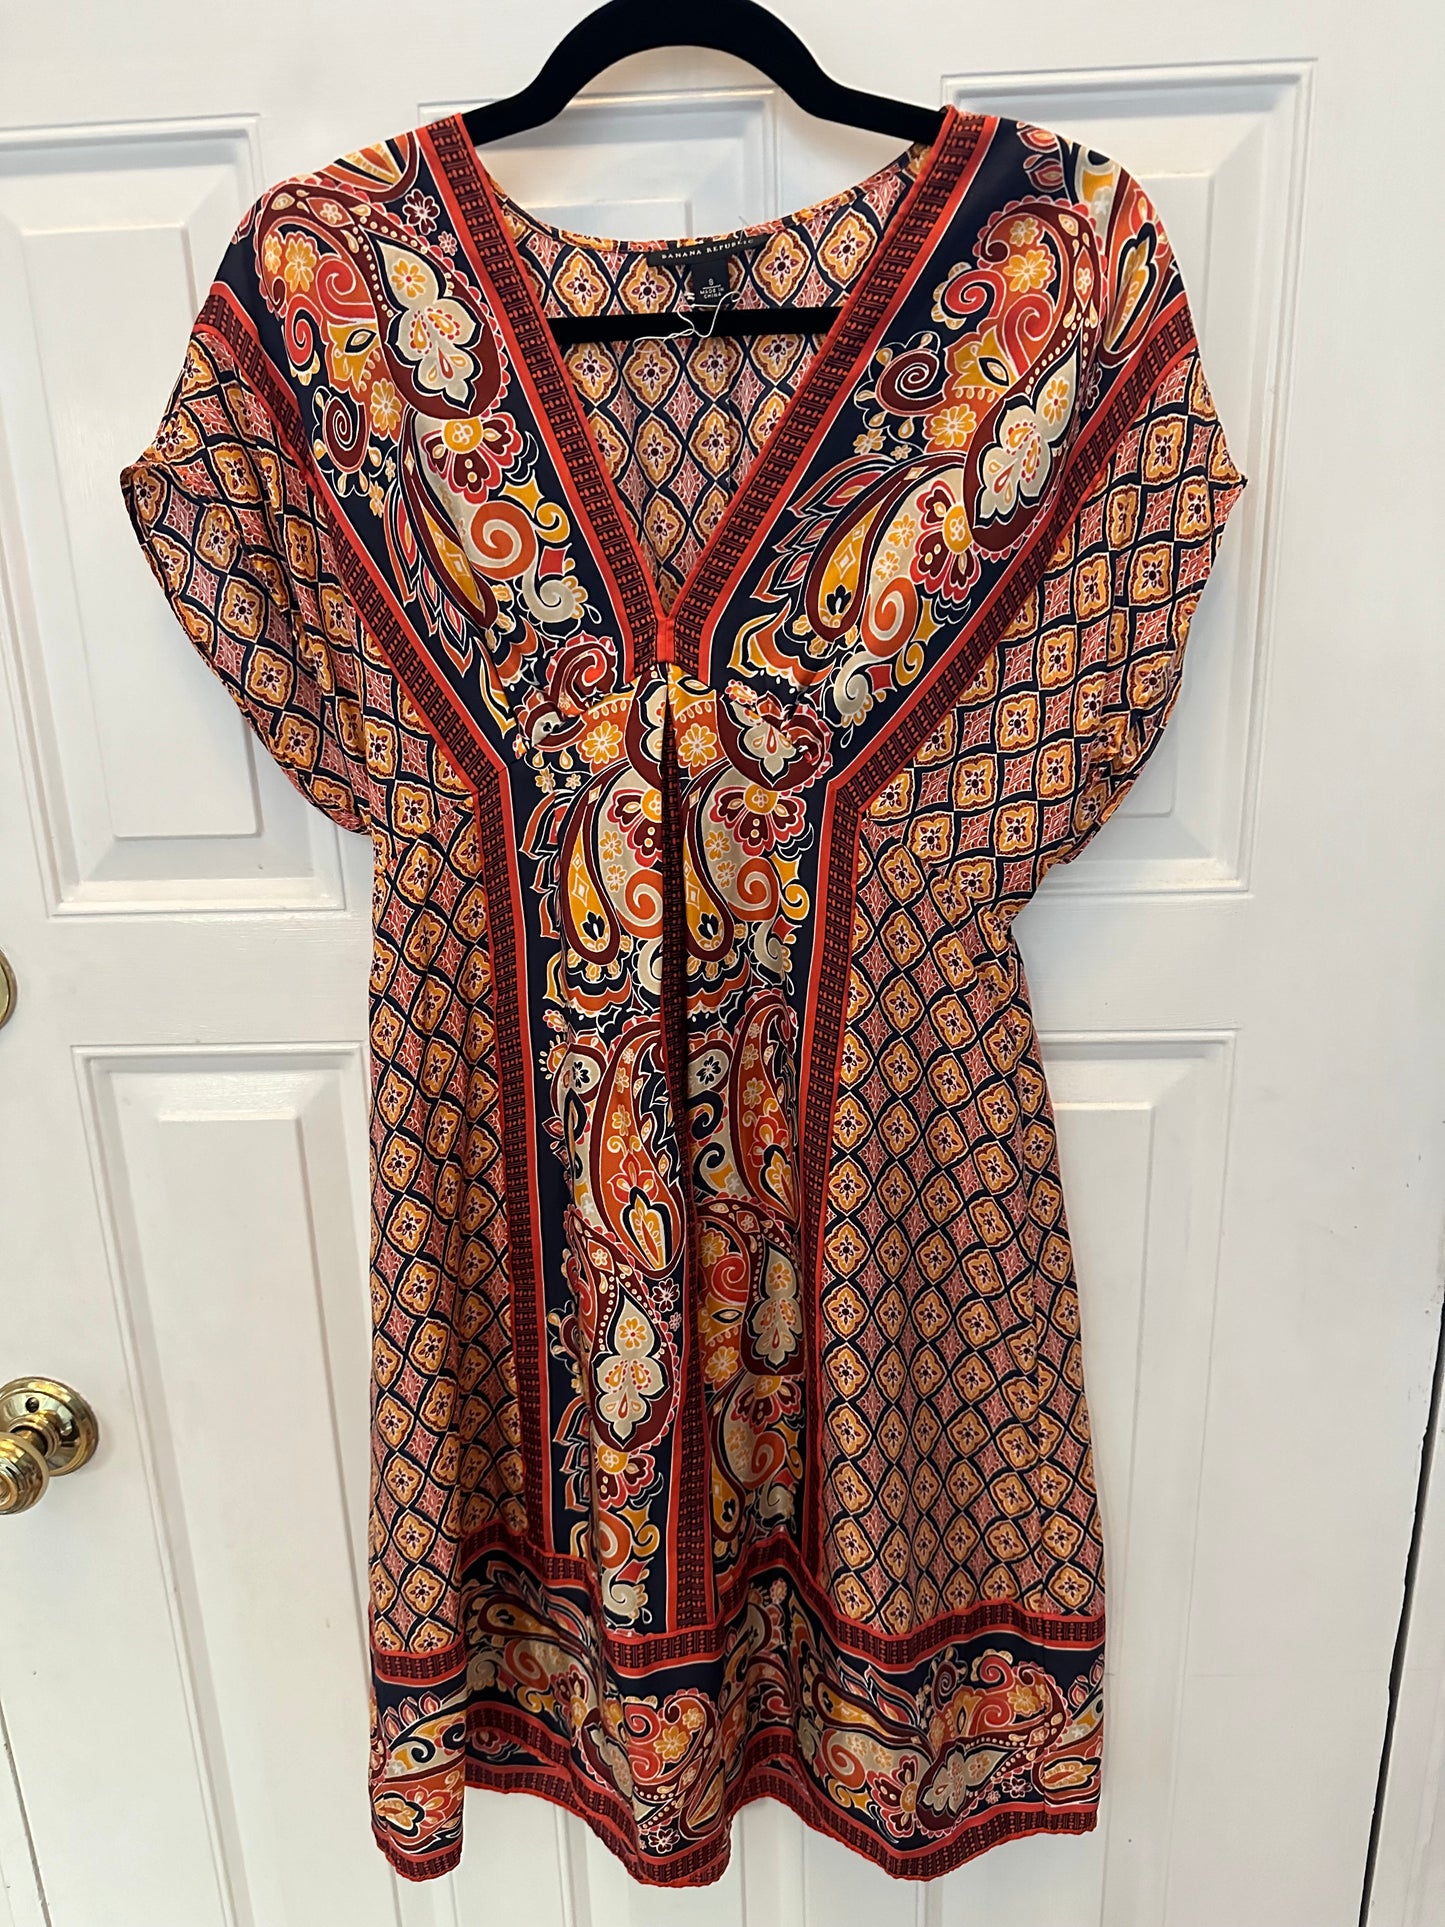 Jcrew Silk Dress Sz Small Orange Navy Retail $148